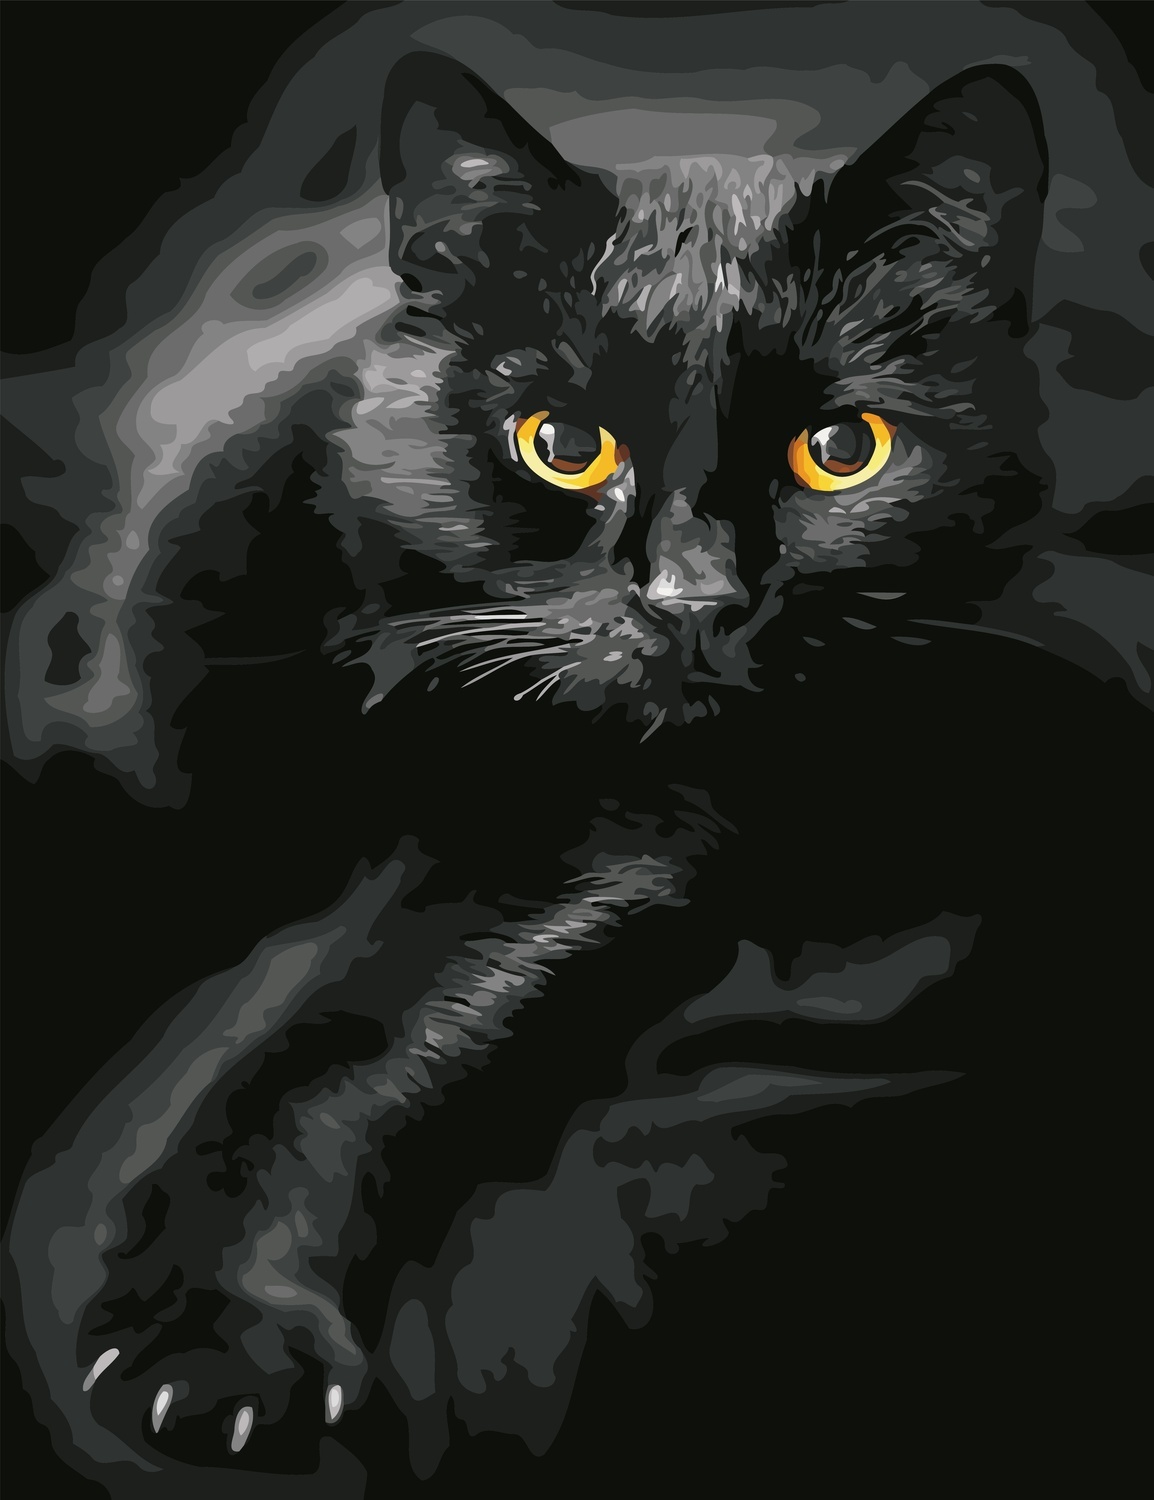 Madame chantilly - Black Cat / Черный кот, схема для вышивания крестом